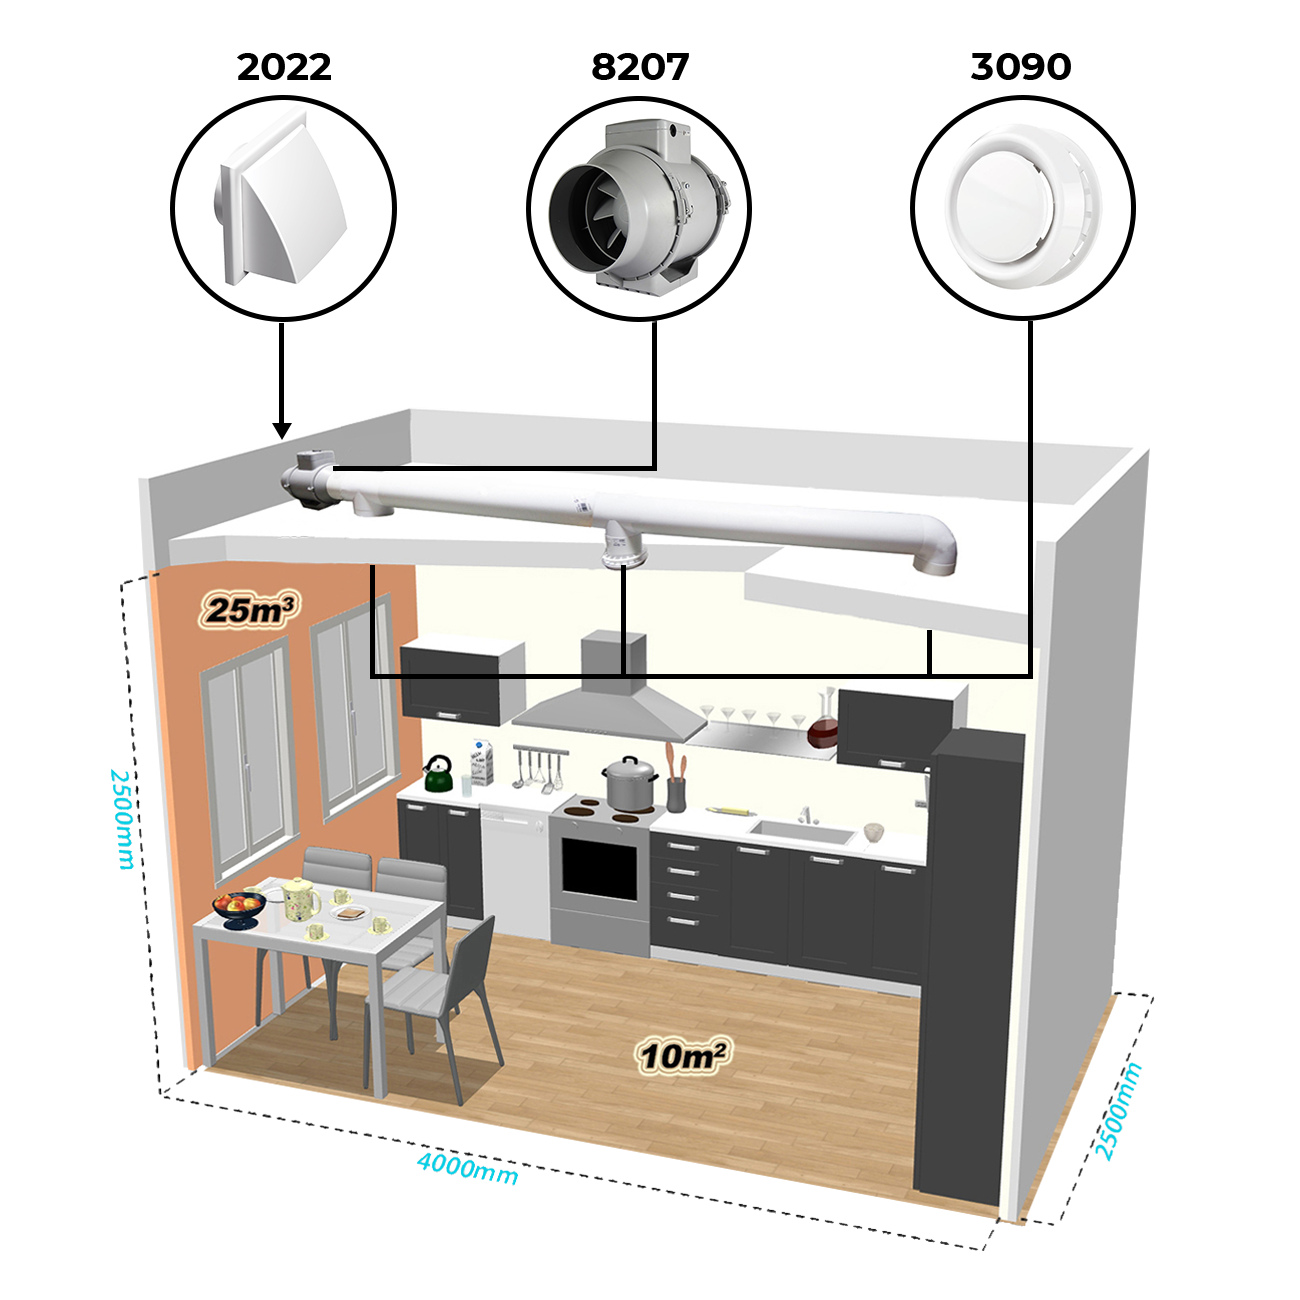 Příklad instalace vzduchotechniky v kuchyni pomocí potrubního ventilátoru Dalap AP PROFI